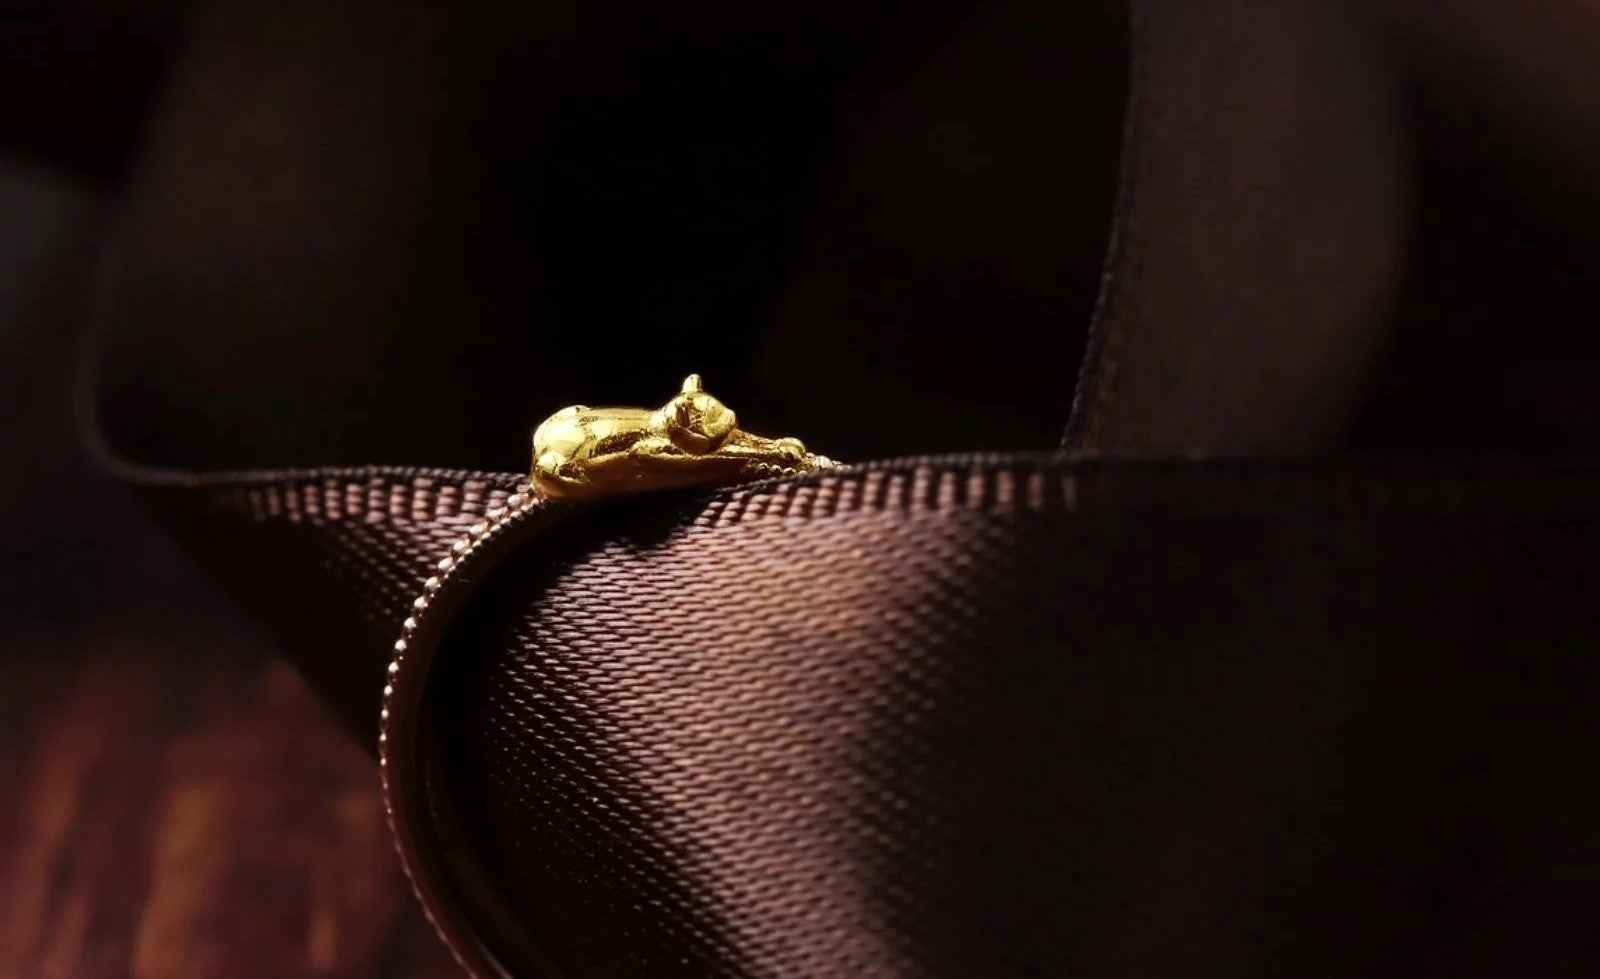 7色の金のリングに『K24純金のねこ』が添えられた価値ある素材のねこのリングです！